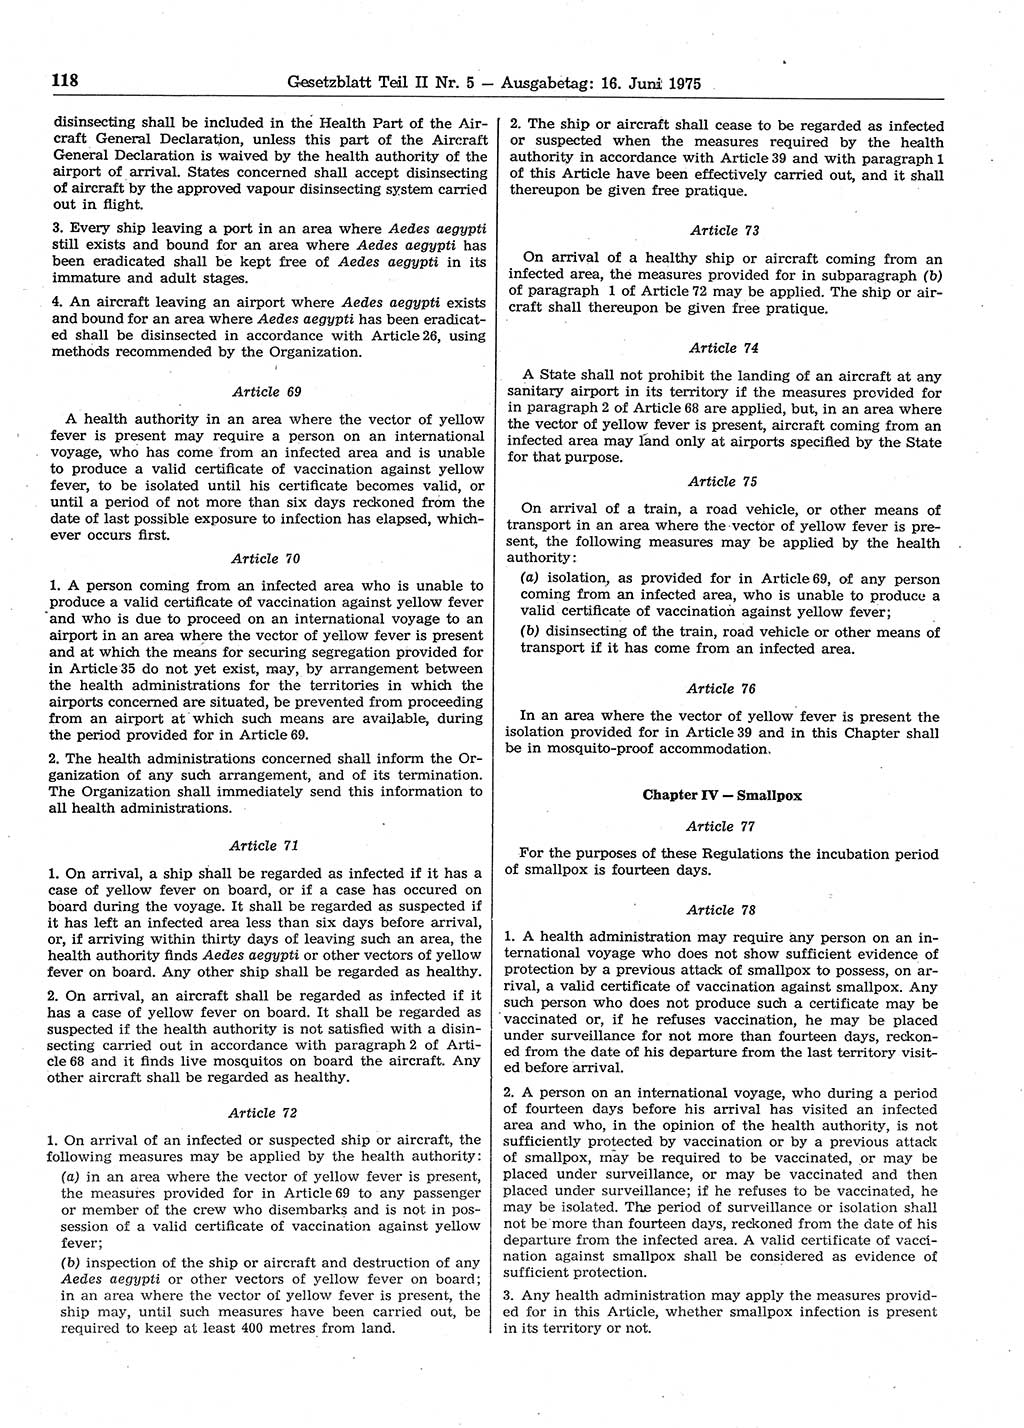 Gesetzblatt (GBl.) der Deutschen Demokratischen Republik (DDR) Teil ⅠⅠ 1975, Seite 118 (GBl. DDR ⅠⅠ 1975, S. 118)